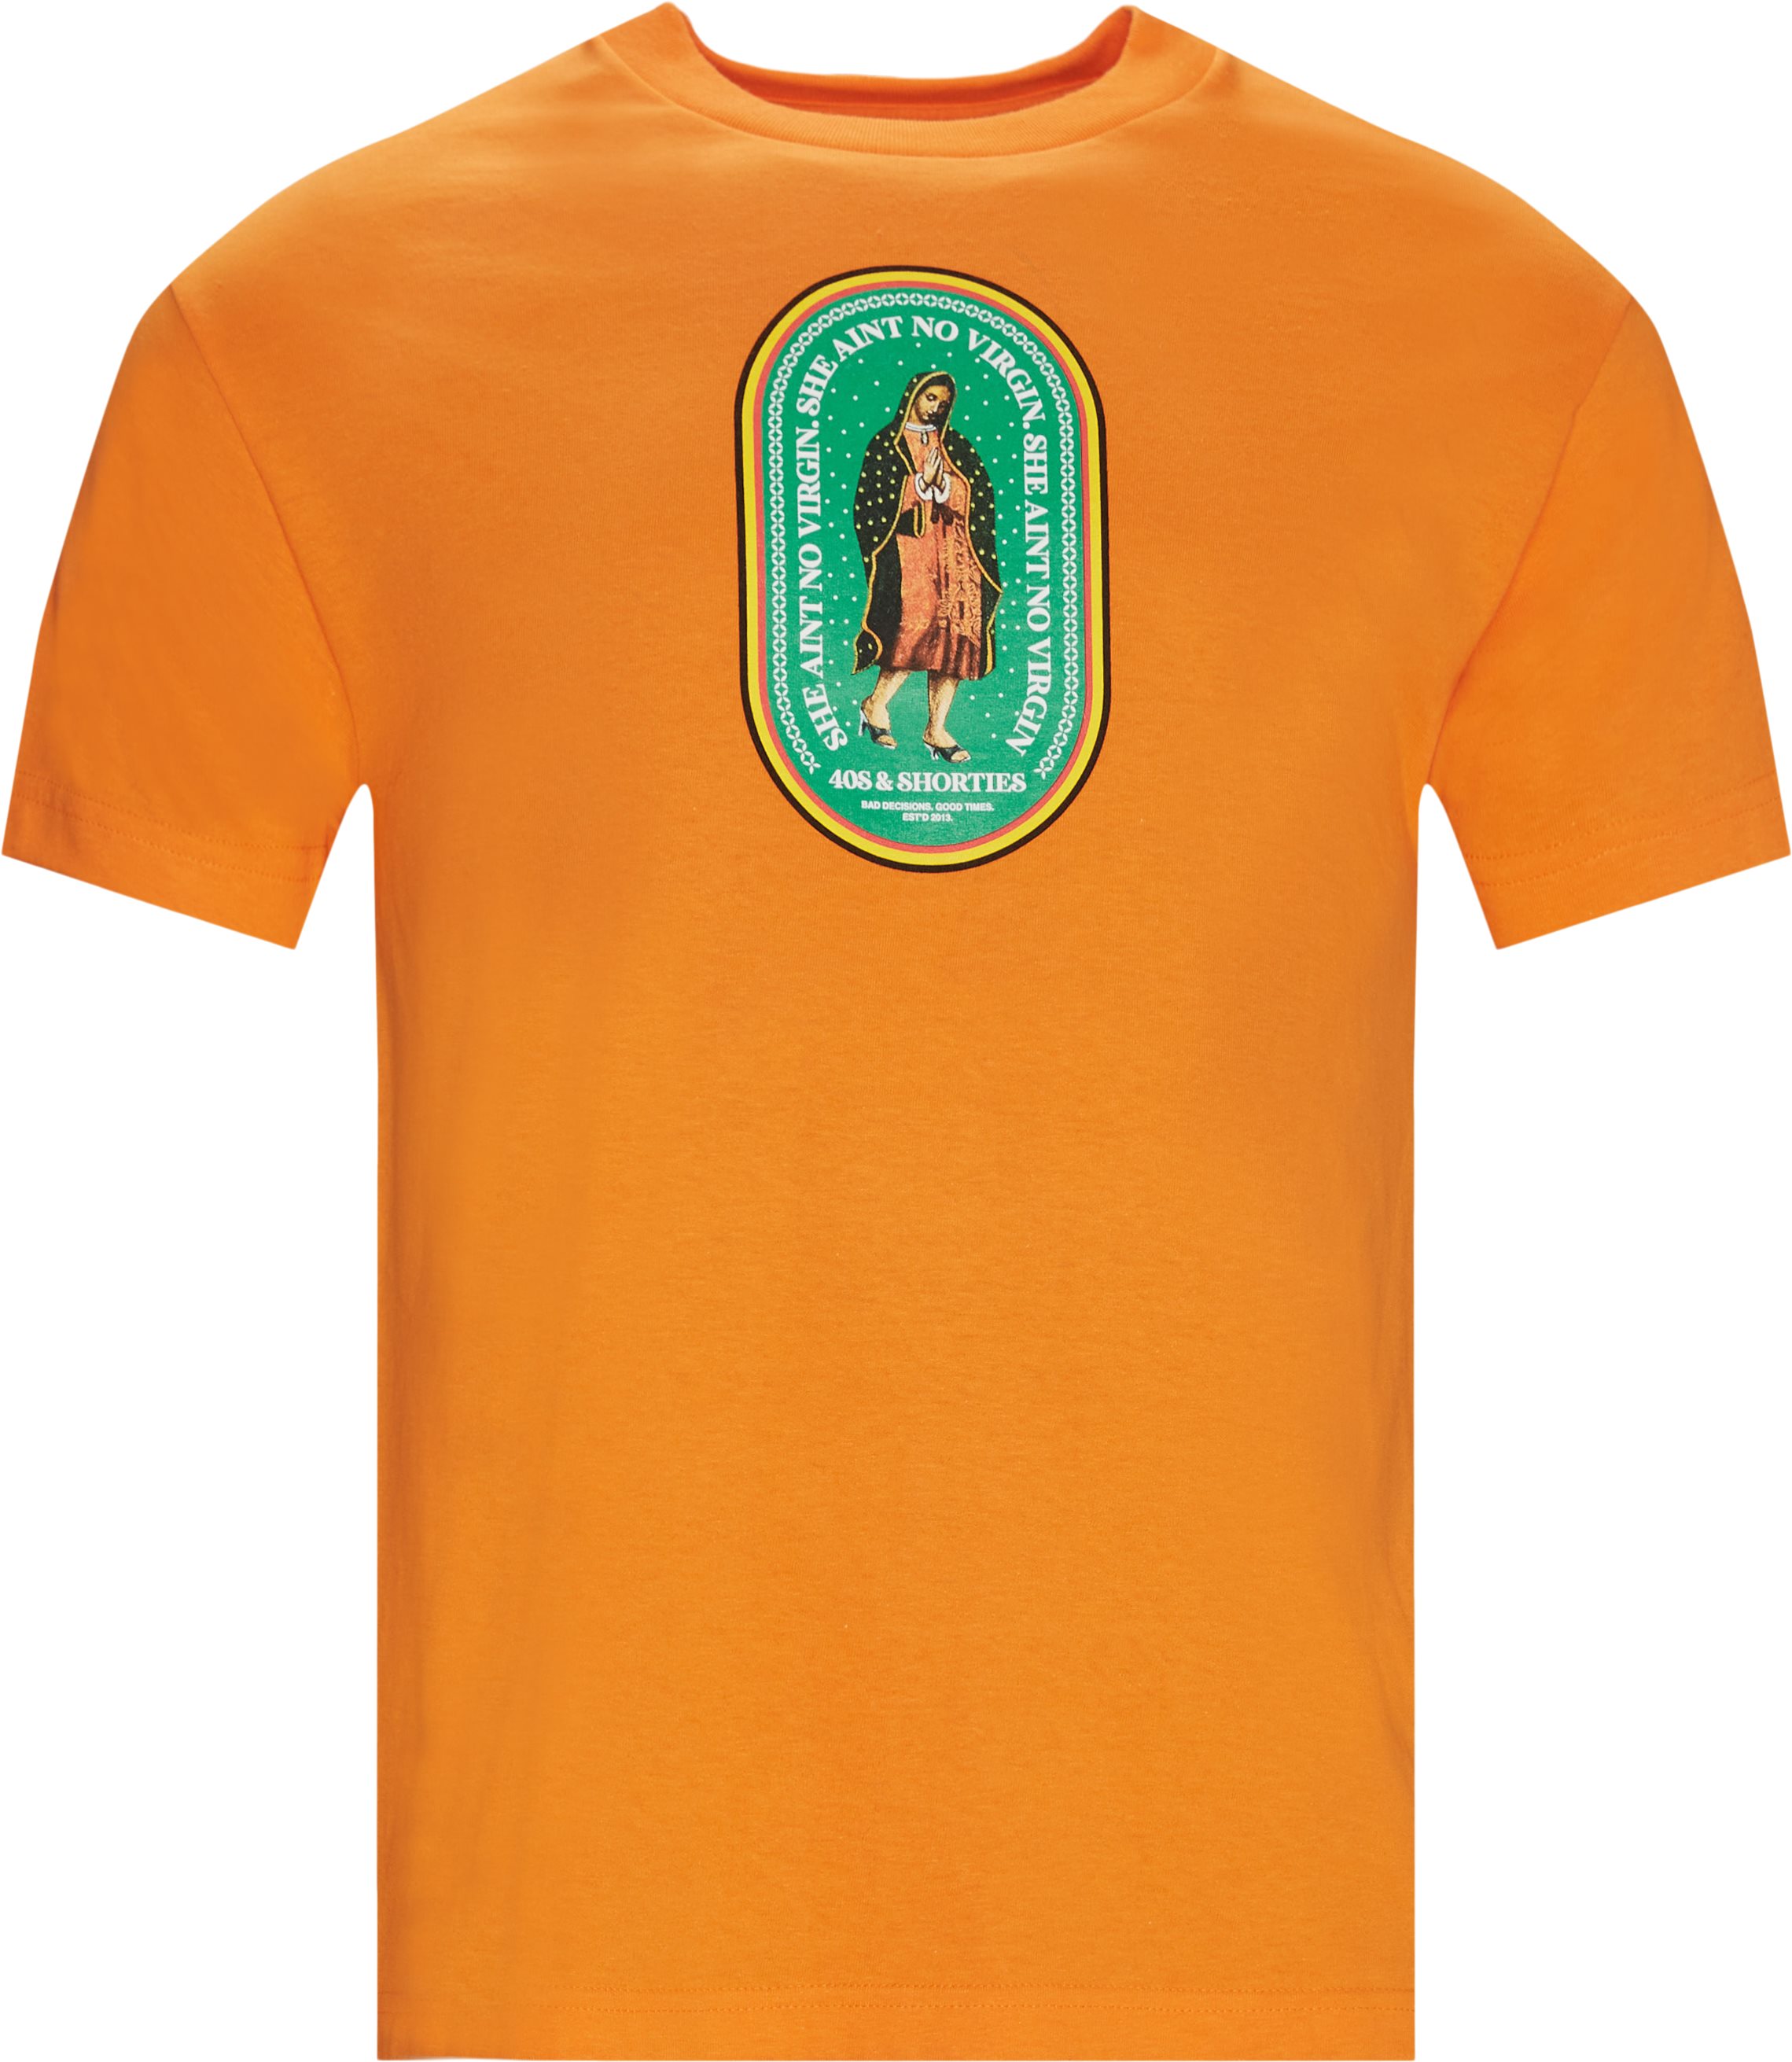 No Virgin Tee - T-shirts - Regular fit - Orange